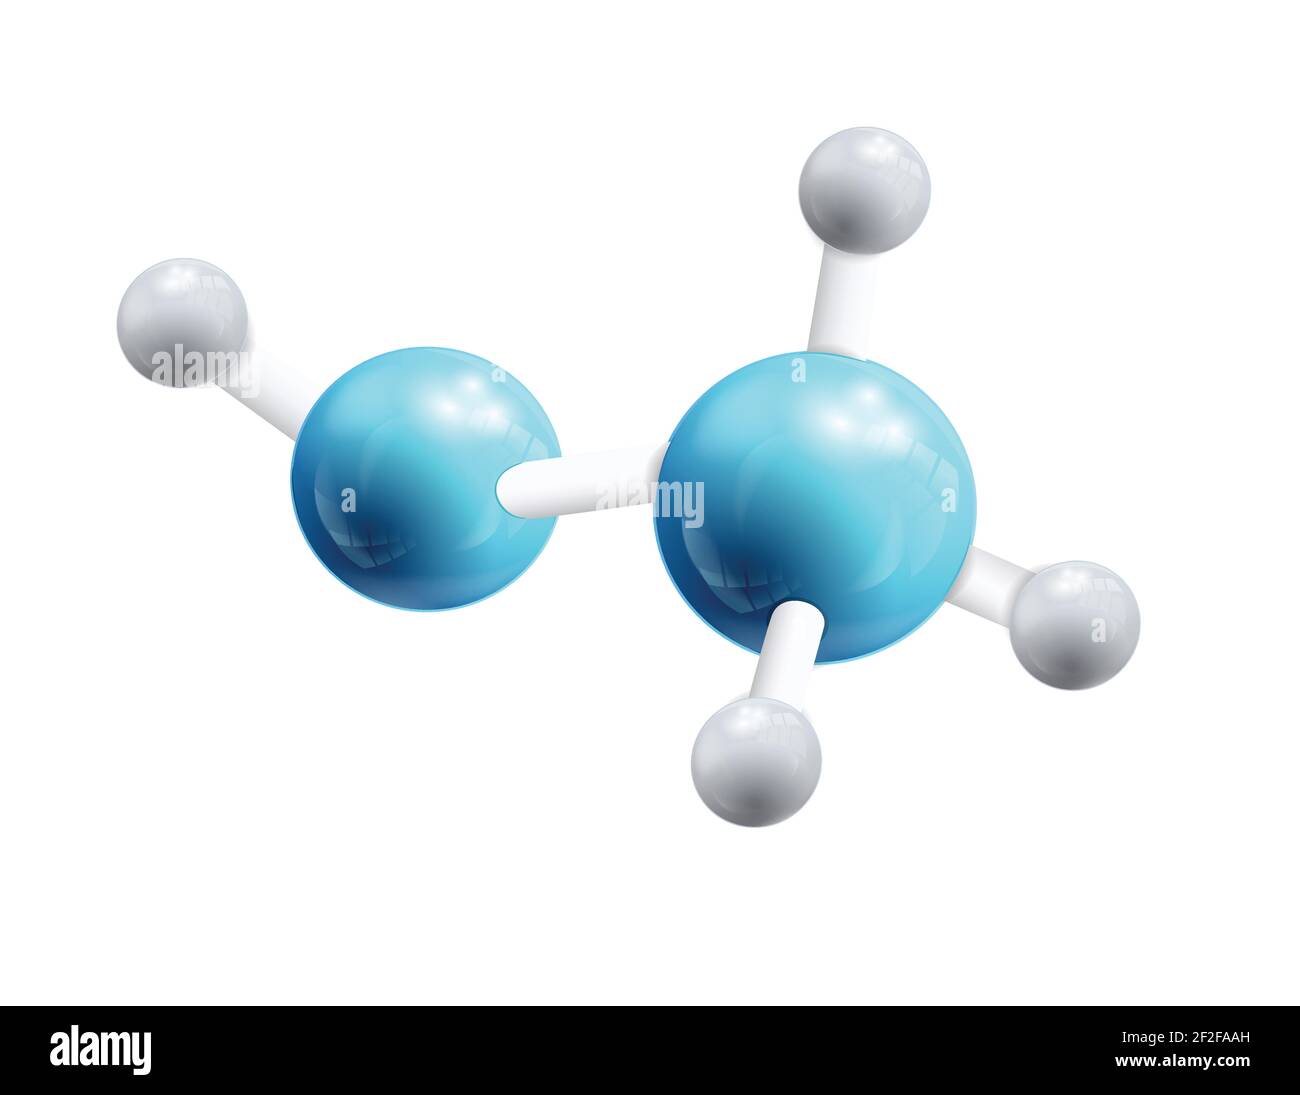 Struktur chemische Formel Objekt und Modell von 3D Molekül bestehend Von blauen und weißen Atomen durch die kleinen Elemente verbunden Isolierte Vektorgrafik Stock Vektor